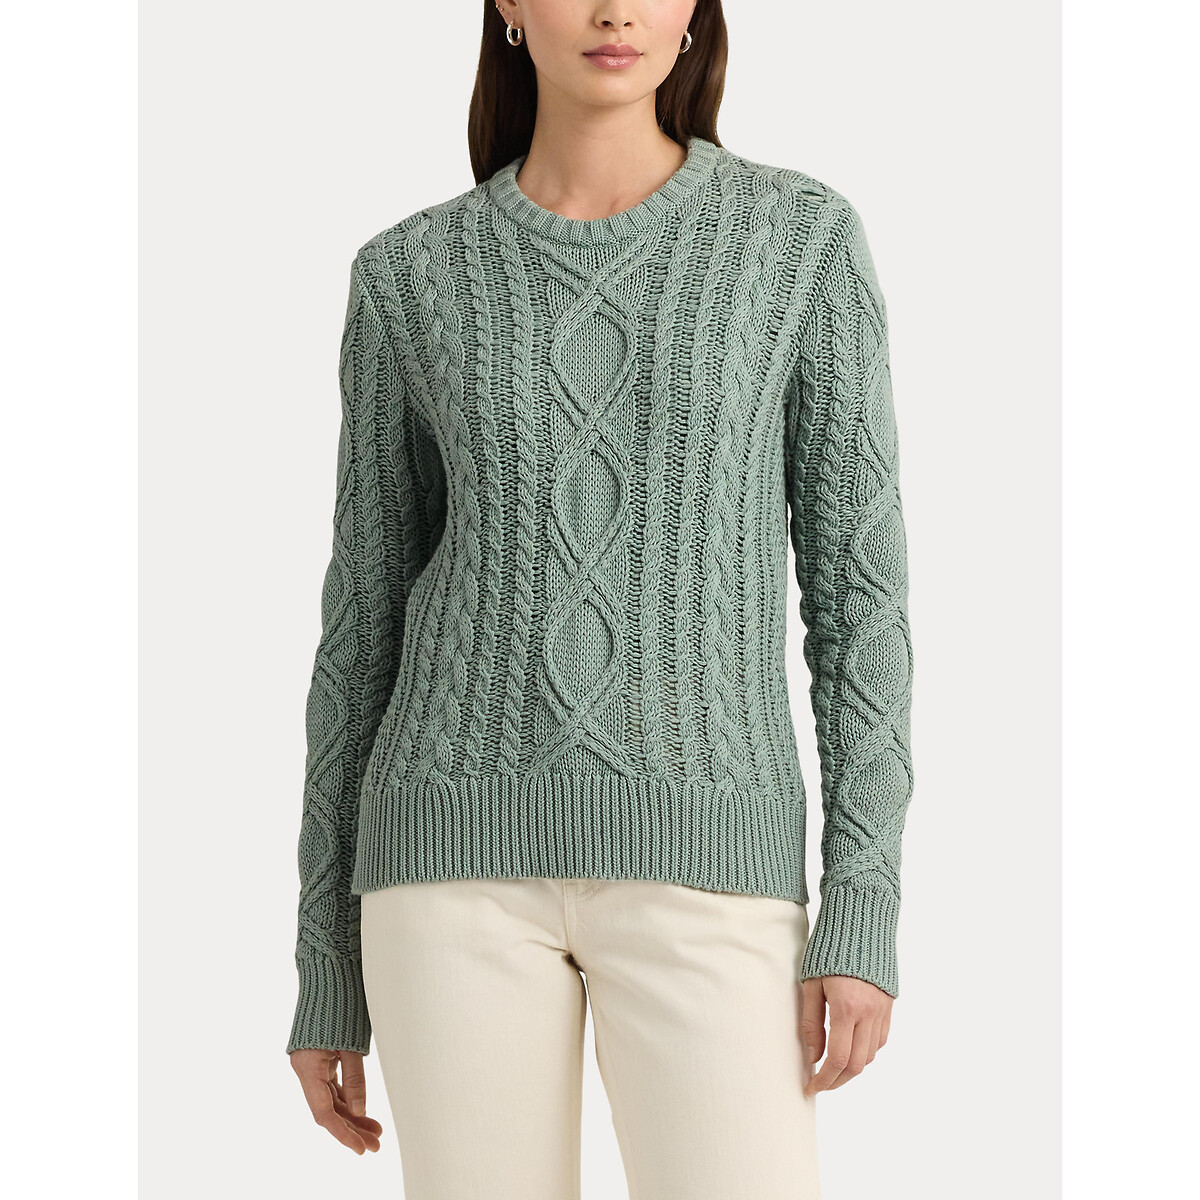 Пуловер с витым узором и круглым вырезом из хлопкового трикотажа HILVAITE XL зеленый пуловер с круглым вырезом из трикотажа с витым узором